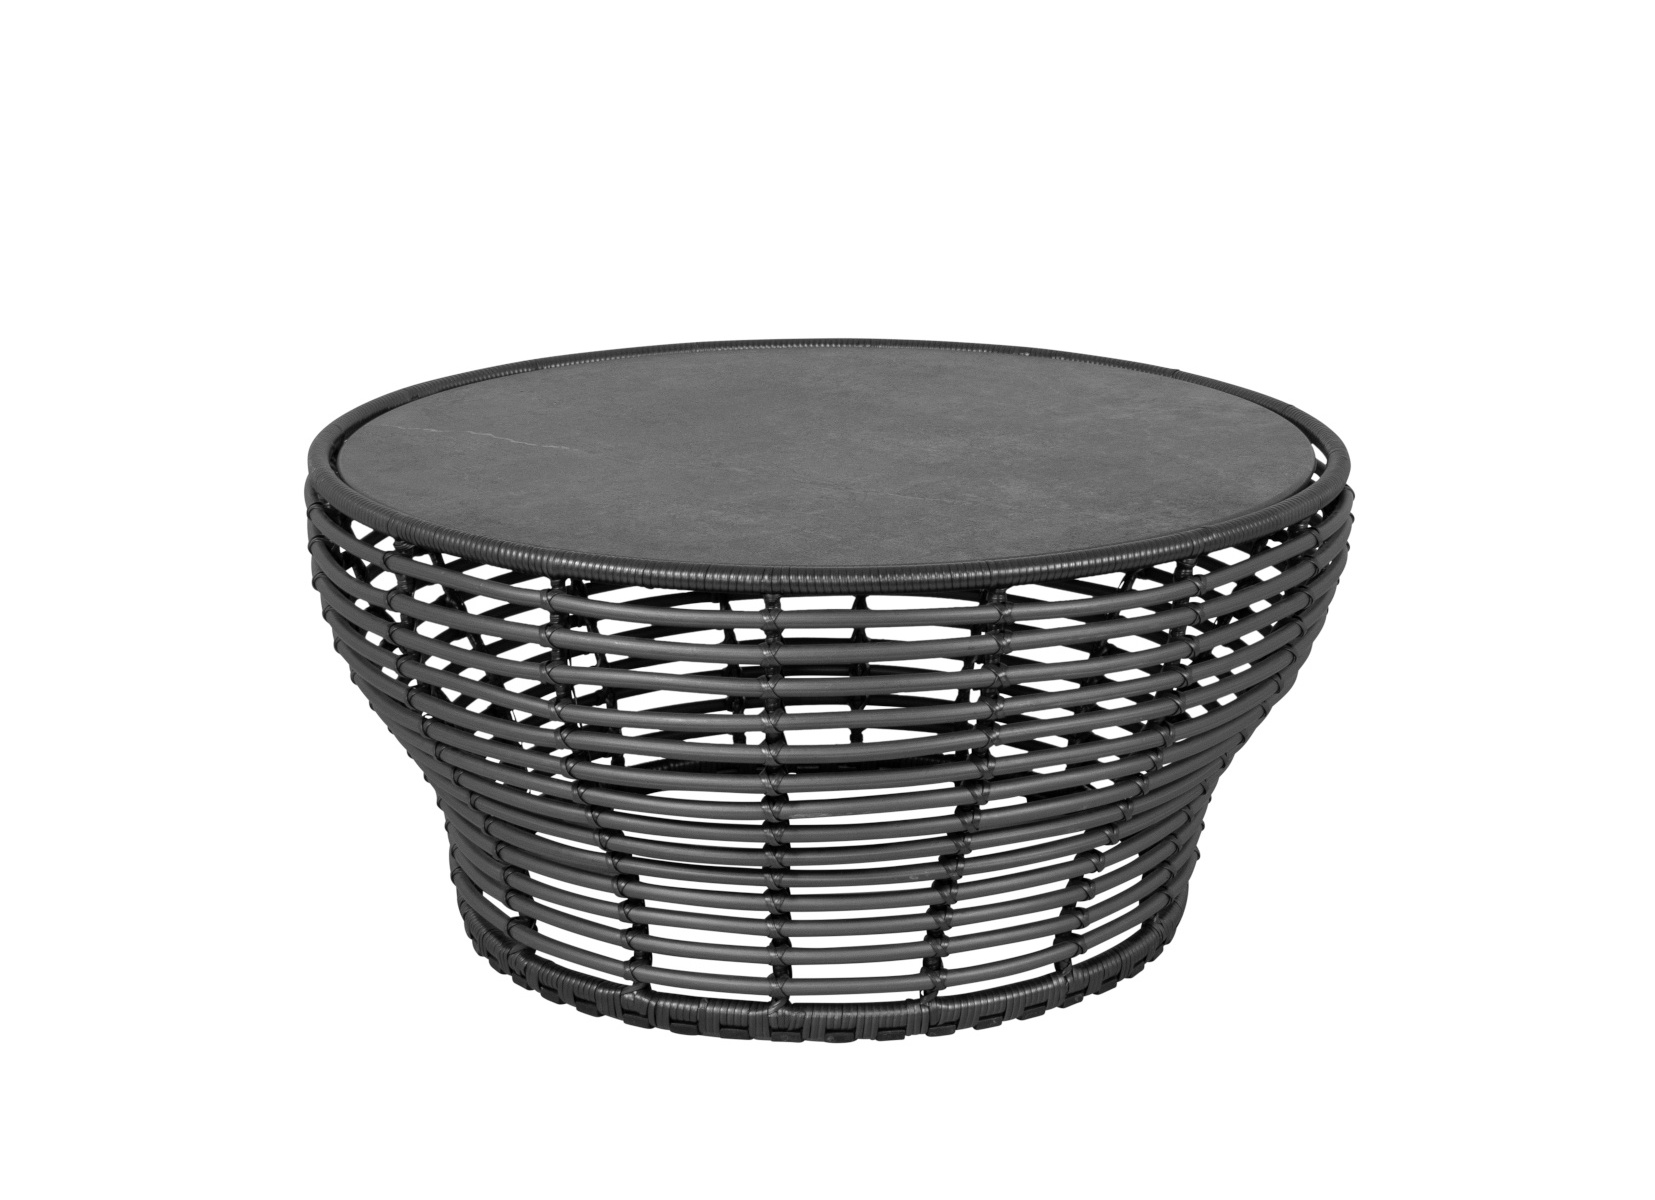 Basket Couchtisch, large, graphit / schwarz